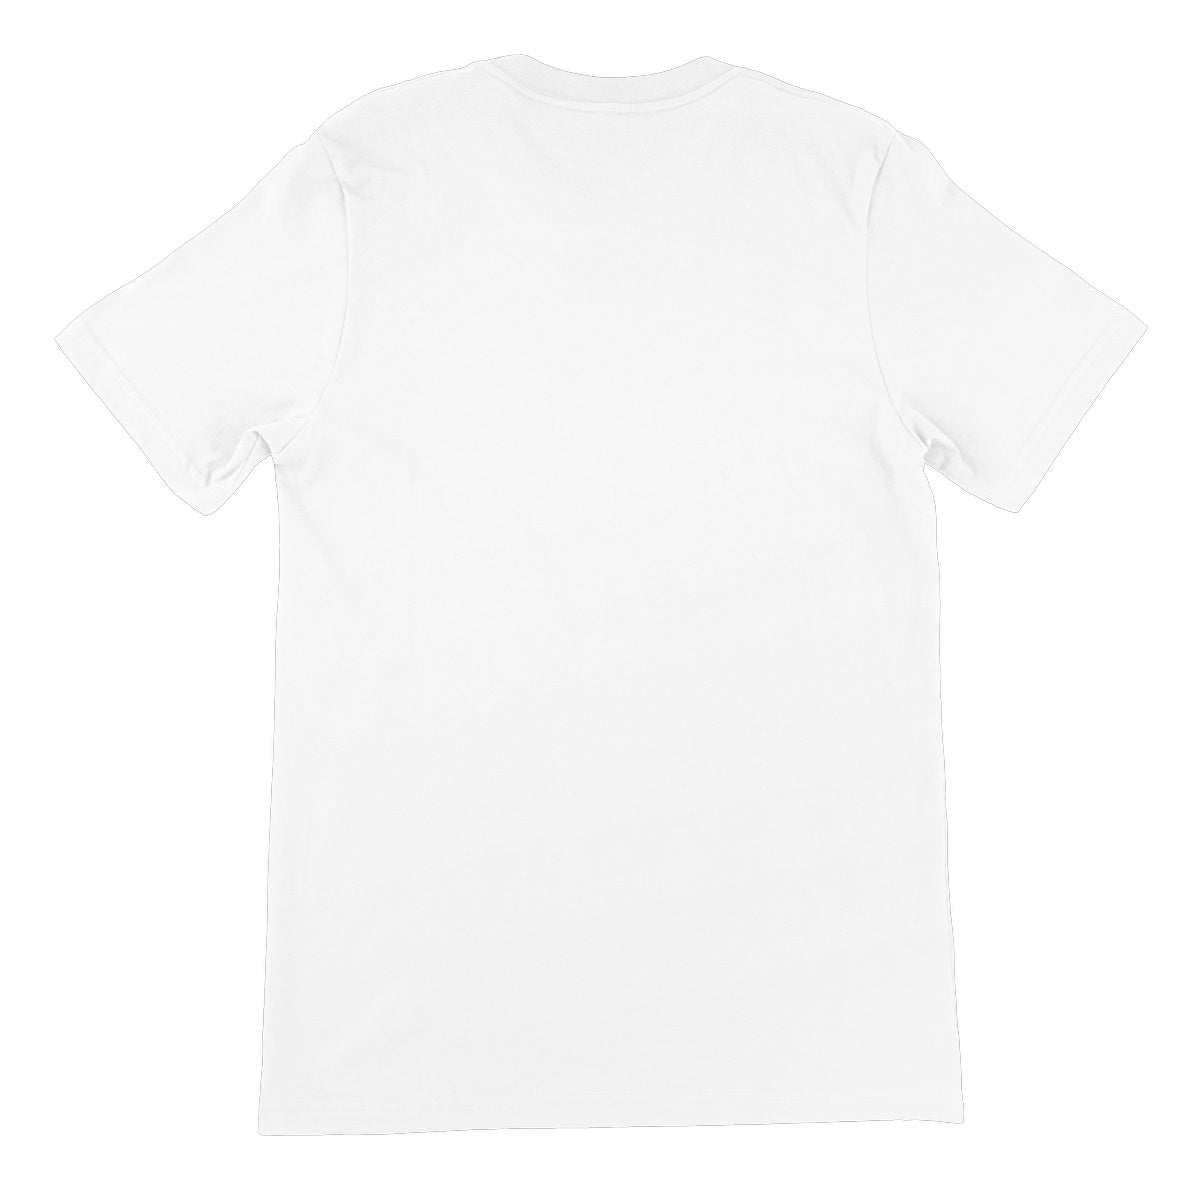 AQUA - 02 - Aquaticus Spirit - Camiseta Unissex Fine Jersey